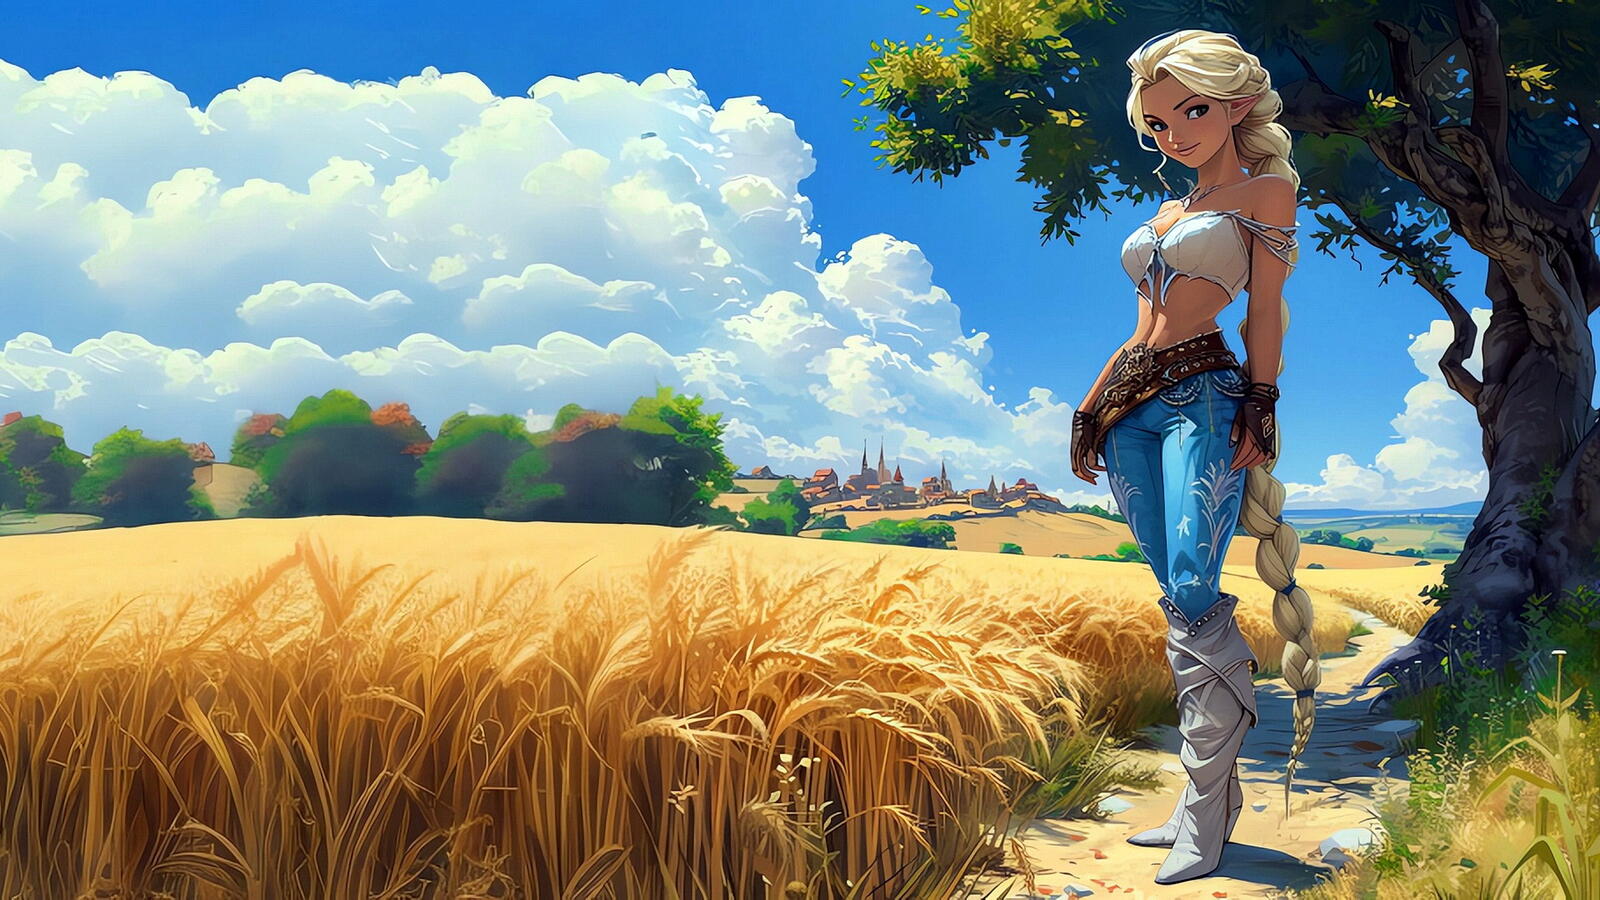 Бесплатное фото Девушка эльф стоит в поле